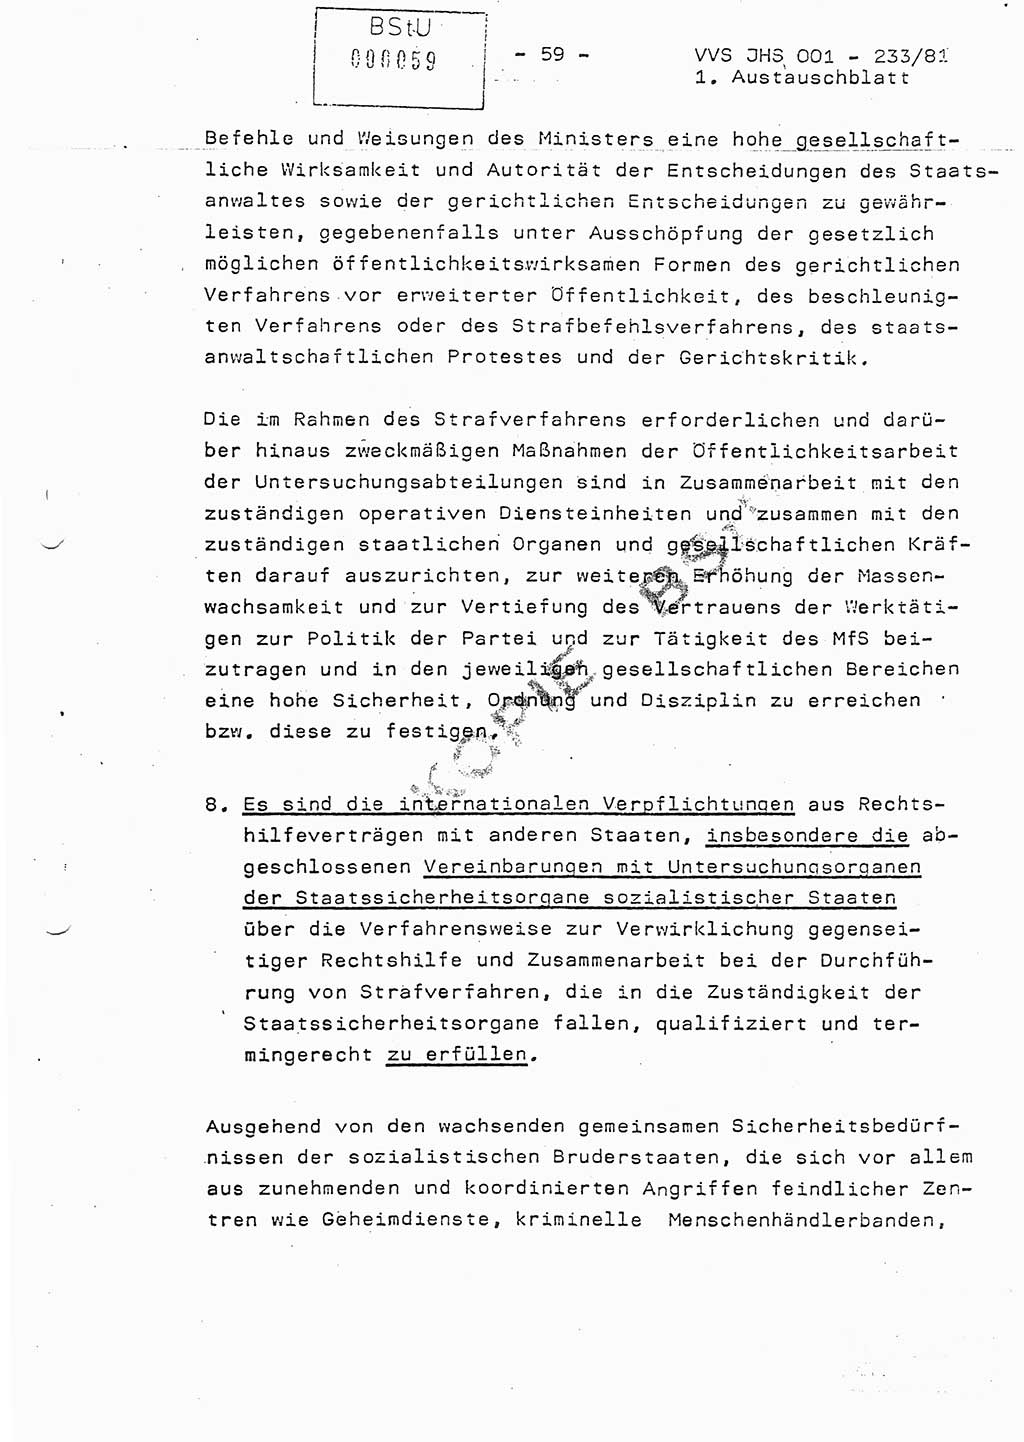 Dissertation Oberstleutnant Horst Zank (JHS), Oberstleutnant Dr. Karl-Heinz Knoblauch (JHS), Oberstleutnant Gustav-Adolf Kowalewski (HA Ⅸ), Oberstleutnant Wolfgang Plötner (HA Ⅸ), Ministerium für Staatssicherheit (MfS) [Deutsche Demokratische Republik (DDR)], Juristische Hochschule (JHS), Vertrauliche Verschlußsache (VVS) o001-233/81, Potsdam 1981, Blatt 59 (Diss. MfS DDR JHS VVS o001-233/81 1981, Bl. 59)